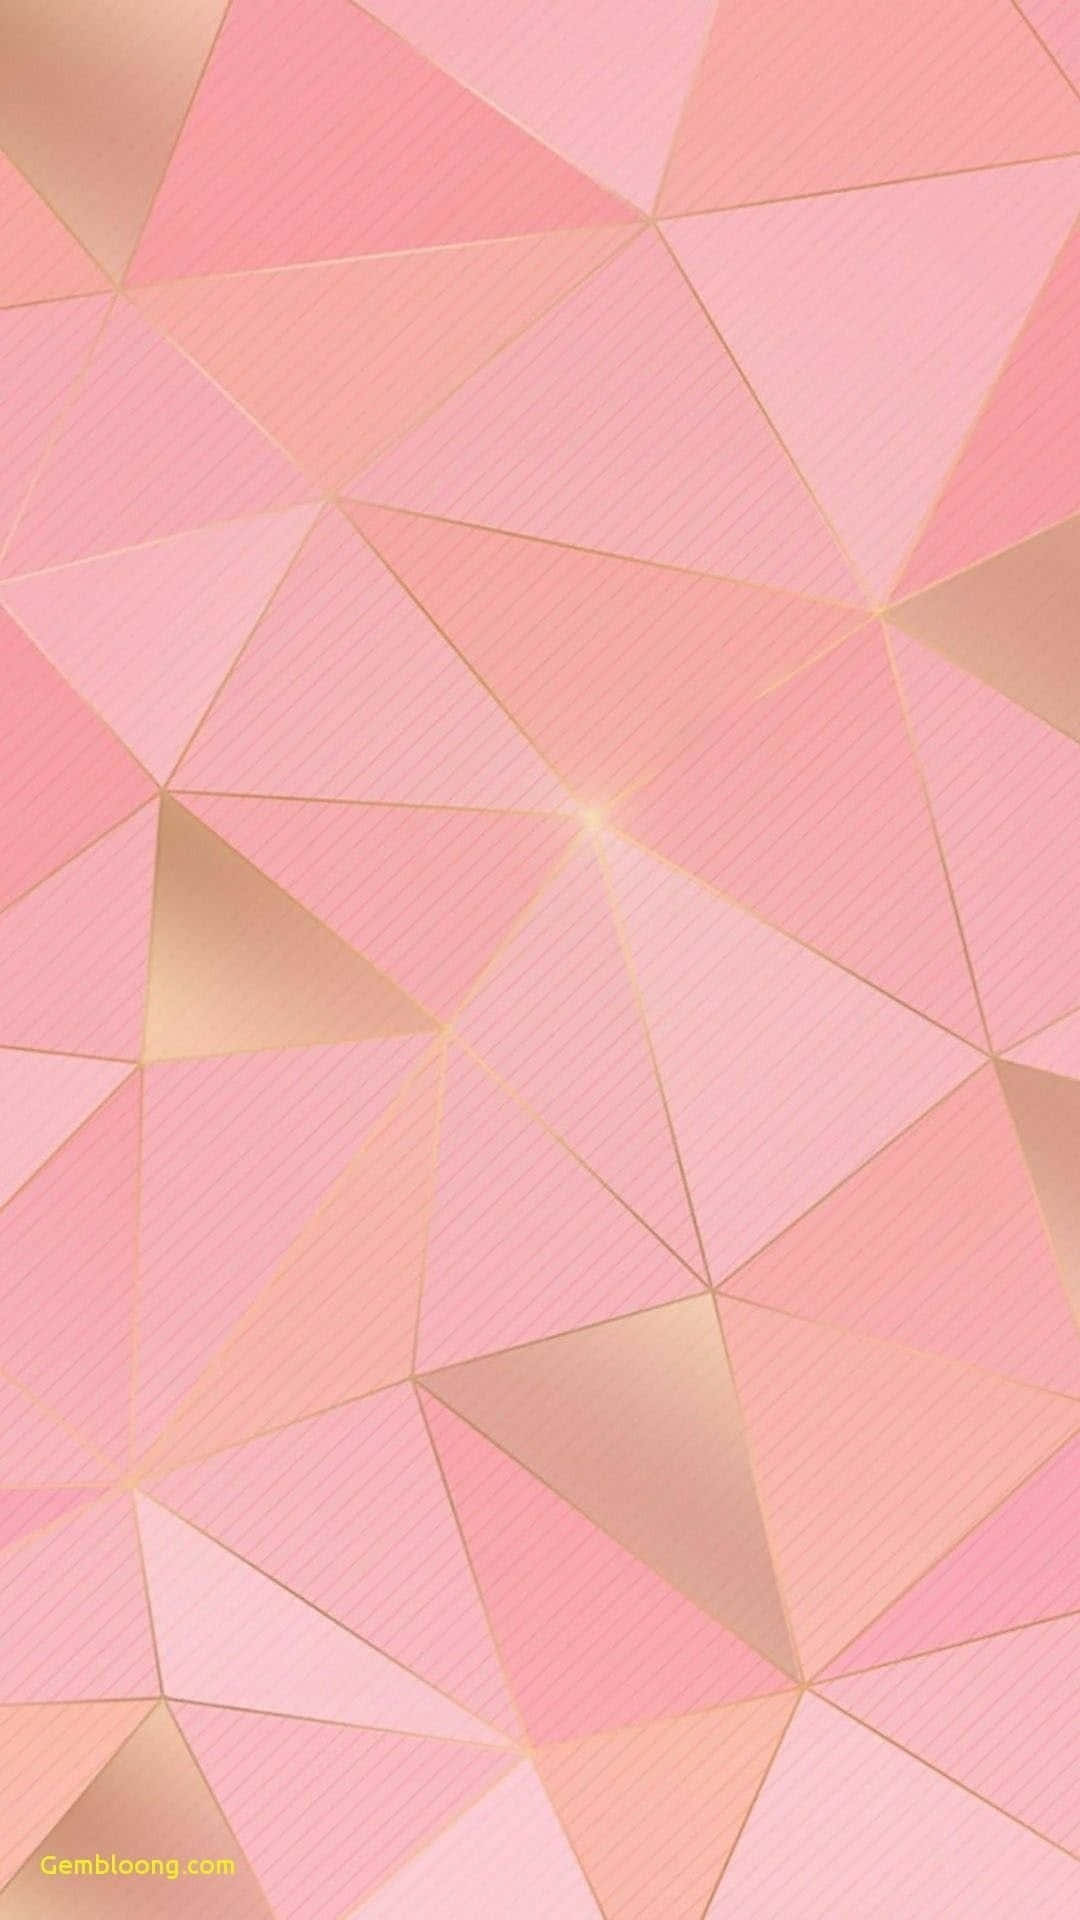 Enjoy the beauty of a light pink iPhone Wallpaper